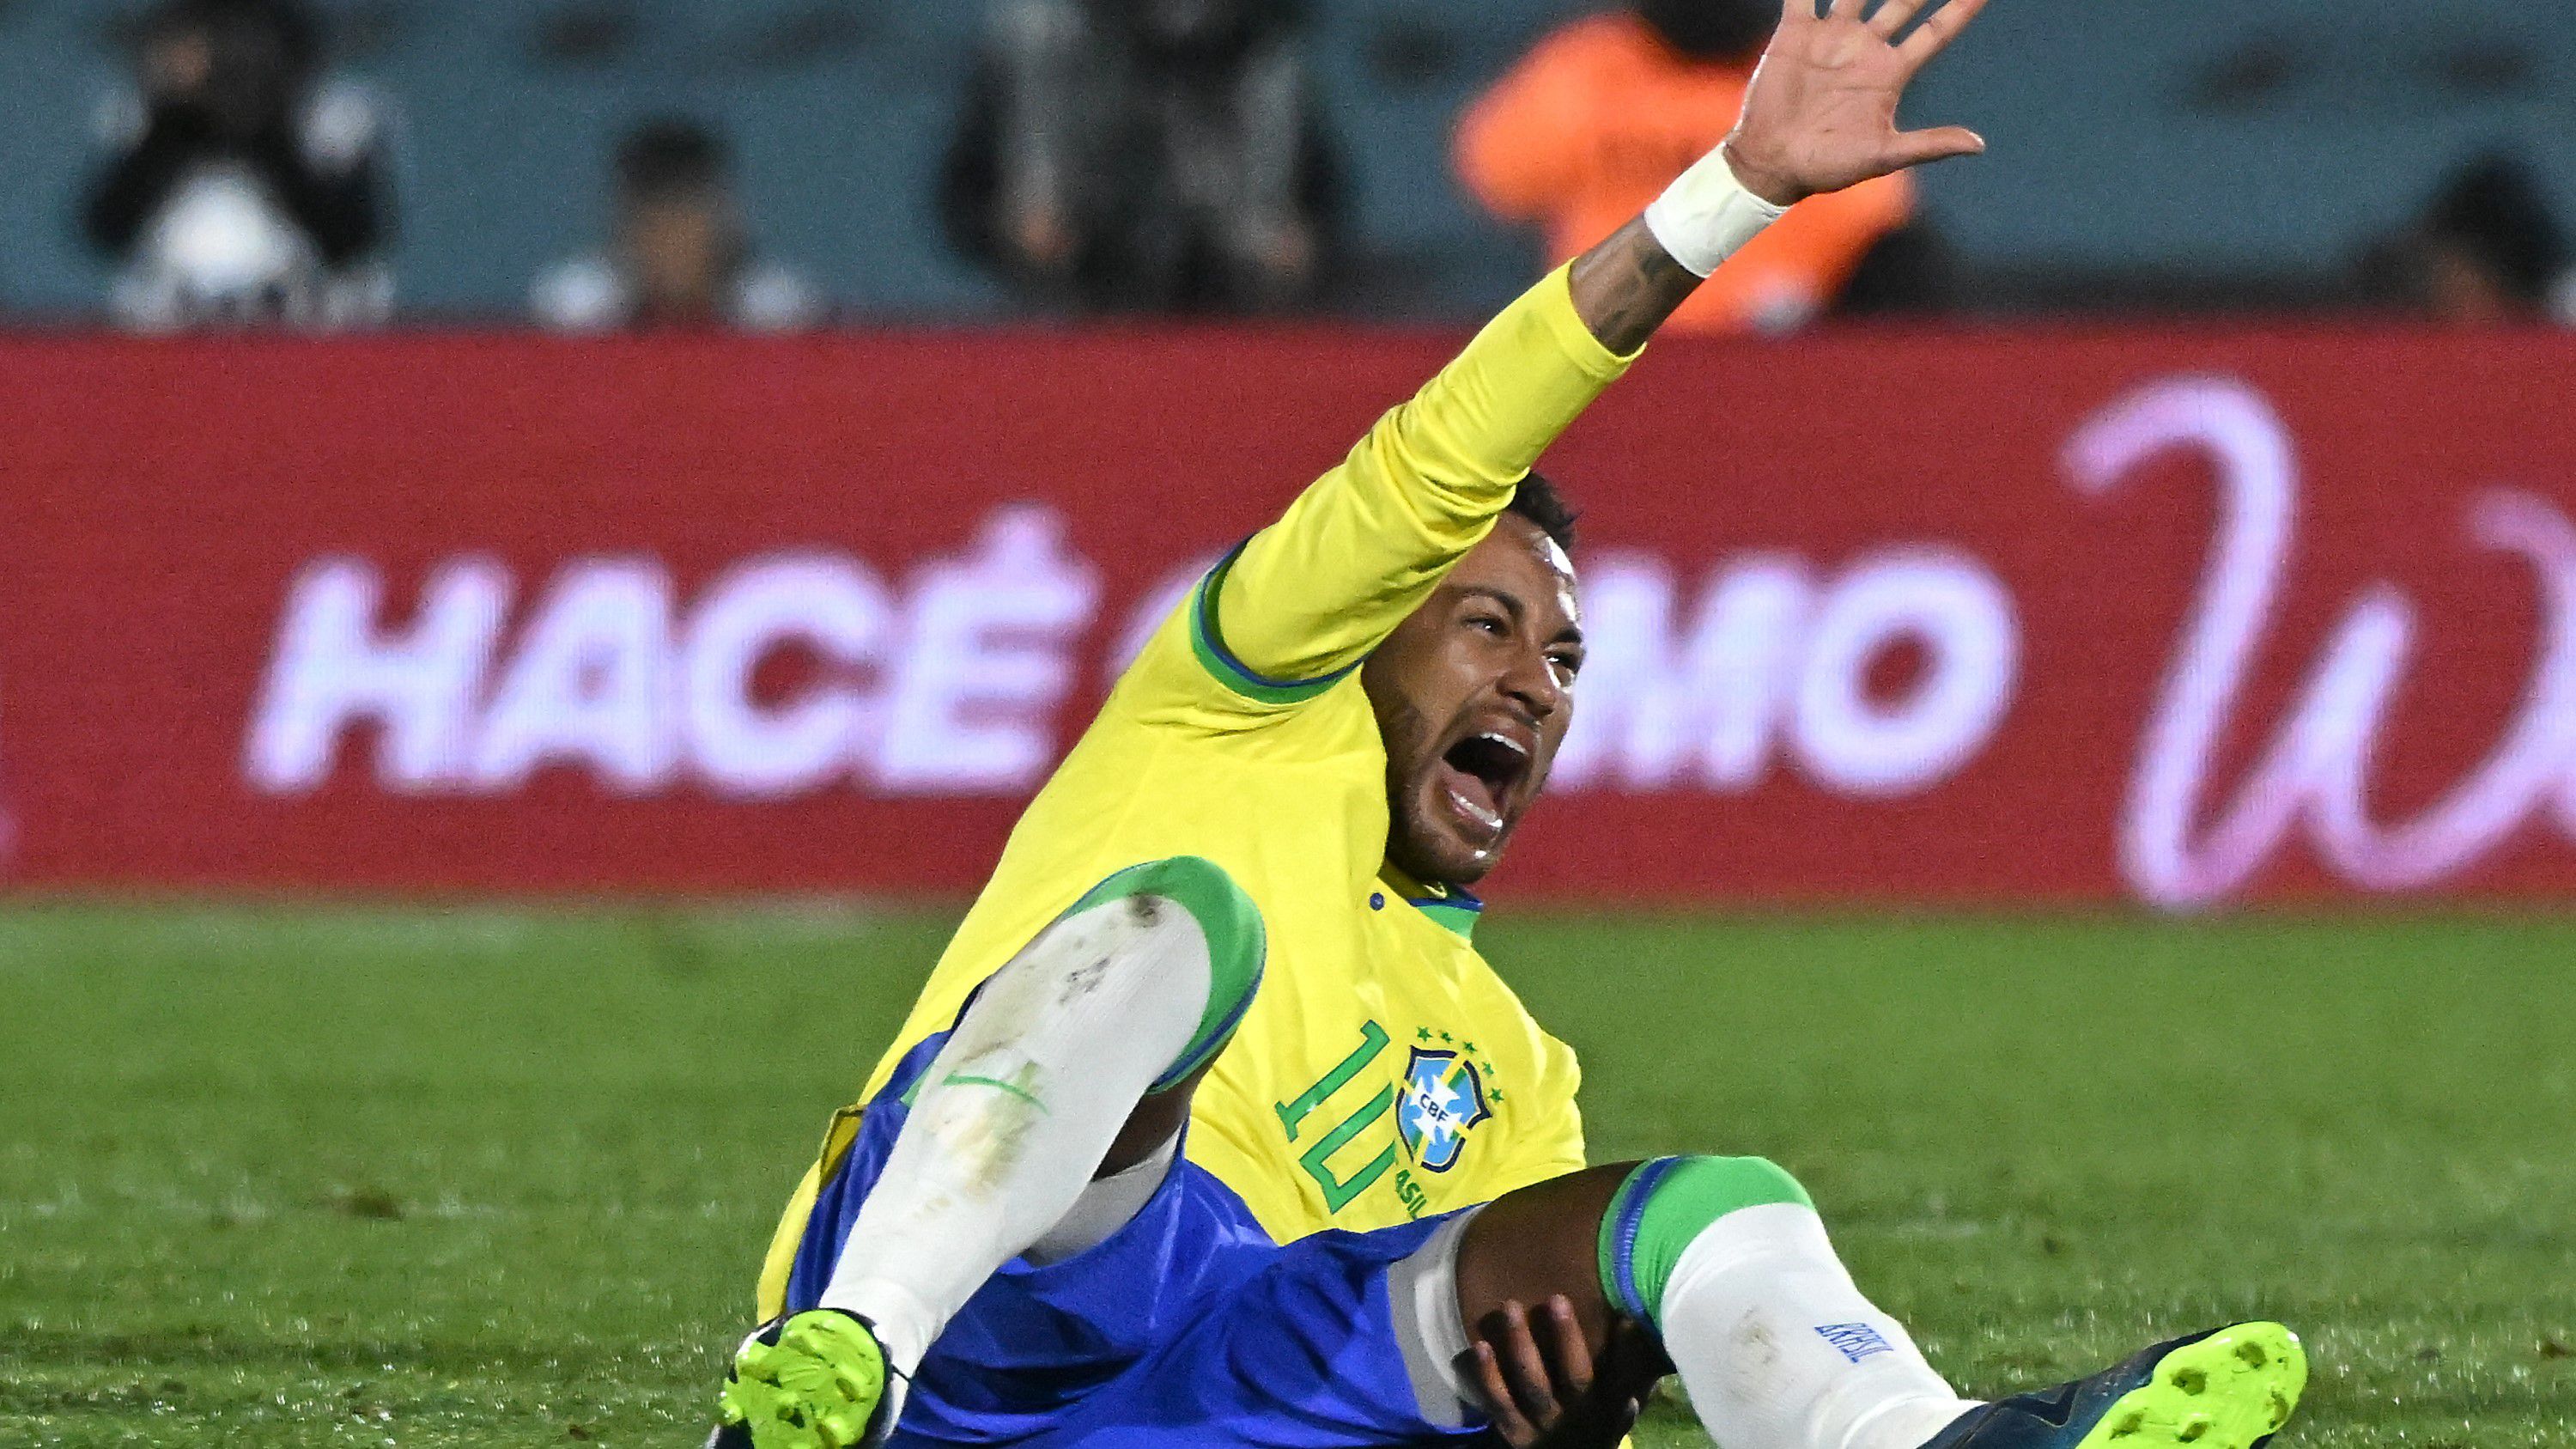 Fájdalmas arccal terült el a földön Neymar az Uruguay elleni világbajnoki selejtezőn, már akkor is sejteni lehetett, hogy komoly a baj